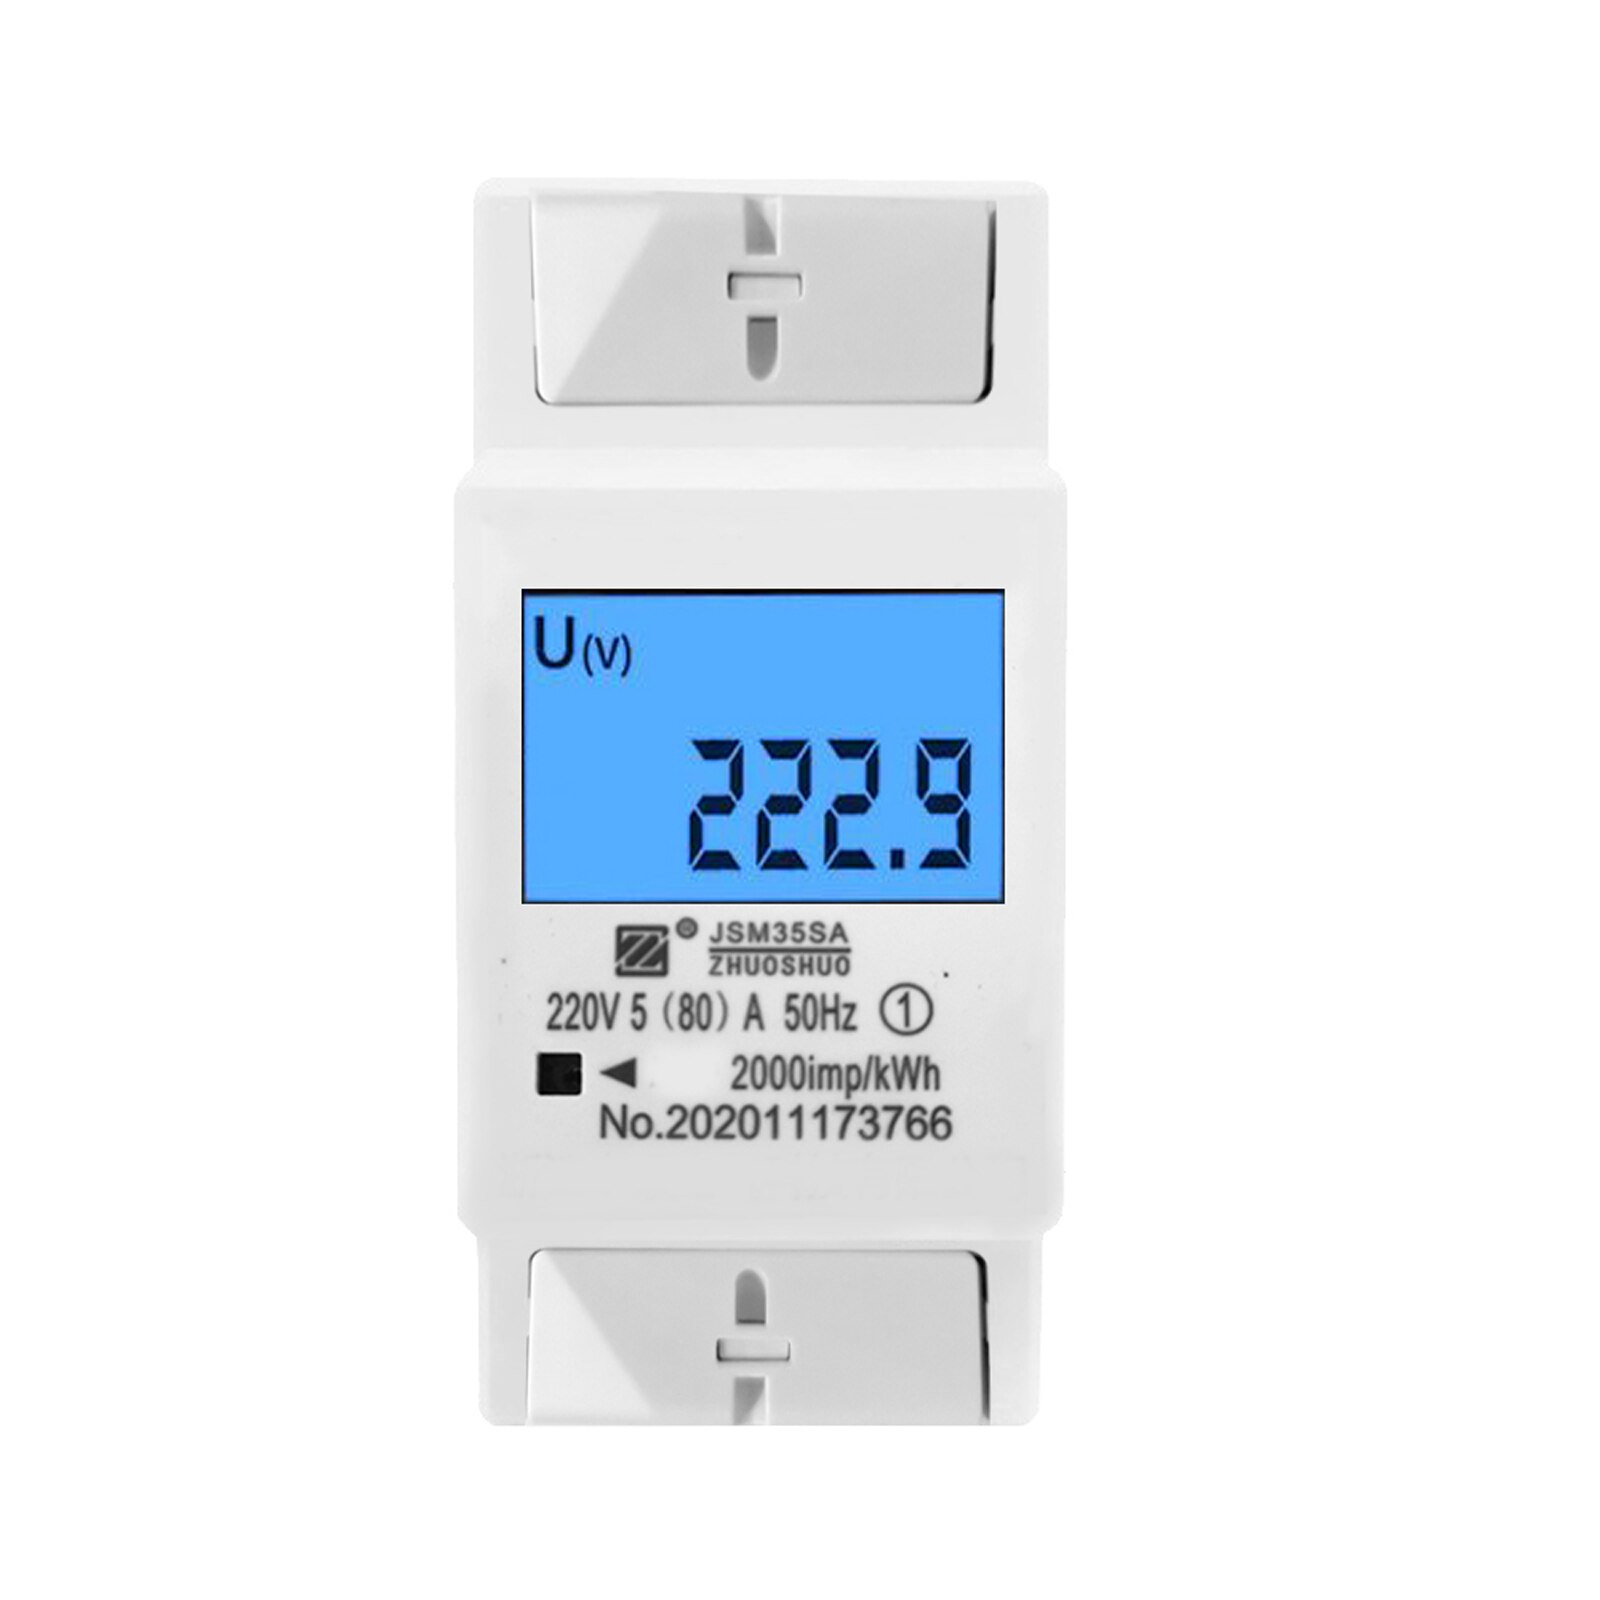 Lcd Digitale Display Stroomverbruik Energie Elektrische Meter Lcd Digitale Eenfase Energiemeter Kwh Energieverbruik Meter